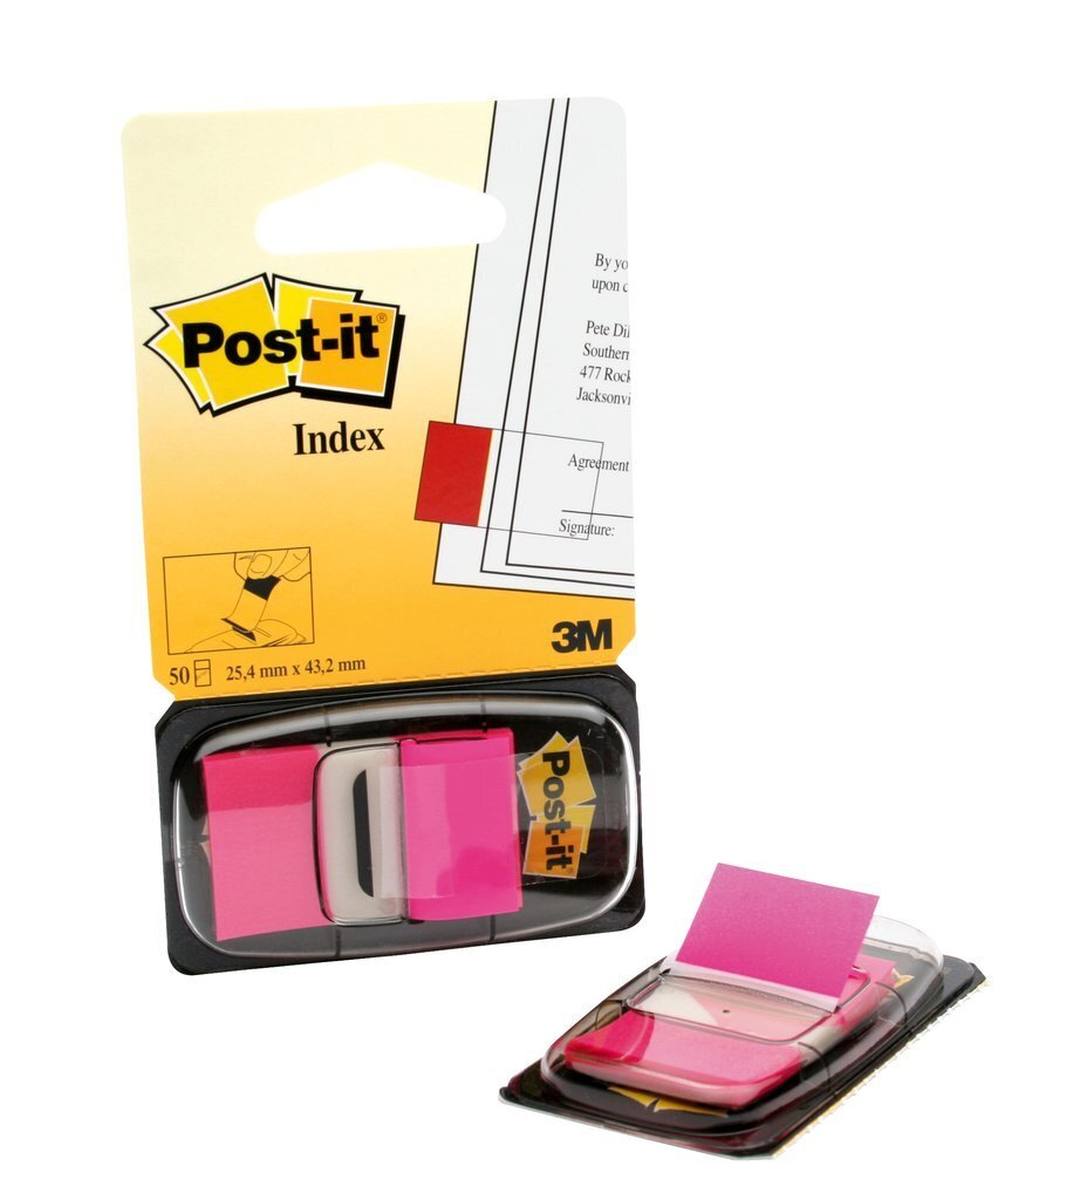 3M Post-it Index I680-21, 25,4 mm x 43,2 mm, vaaleanpunainen, 1 x 50 liimanauhaa annostelulaitteessa